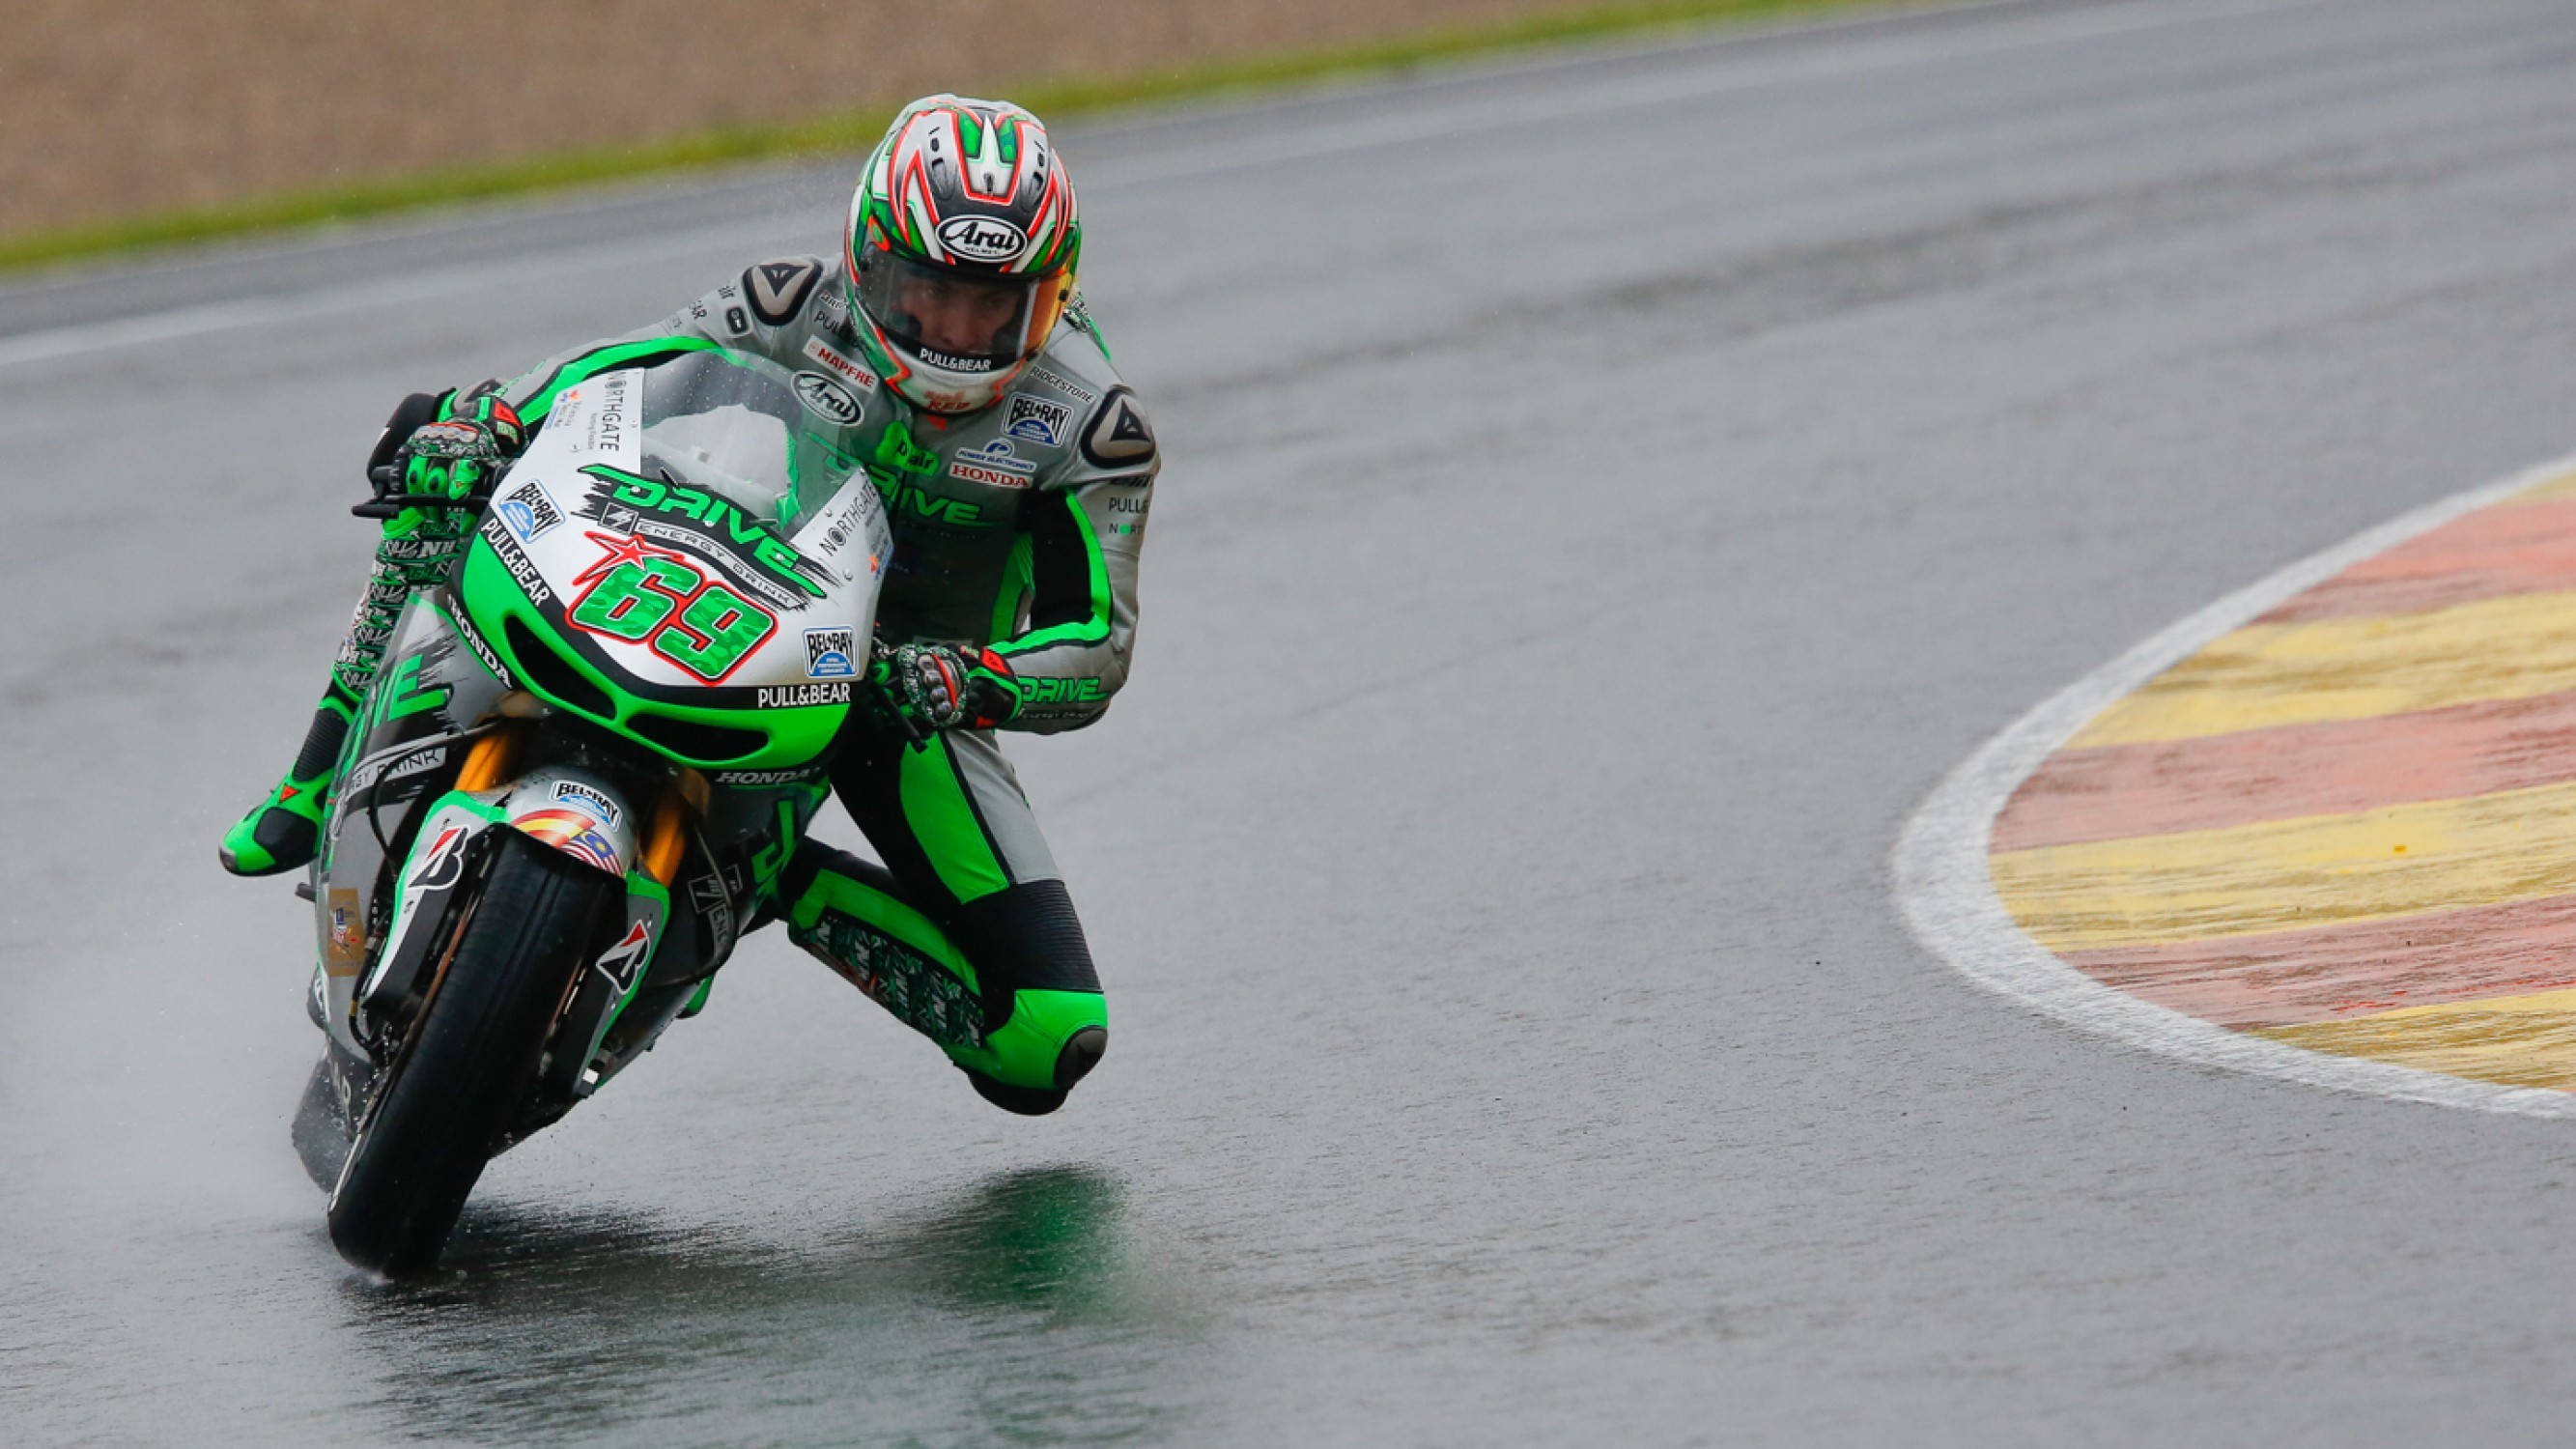 Nicky Hayden Racing In The Rain - Nicky Hayden Race Bike , HD Wallpaper & Backgrounds